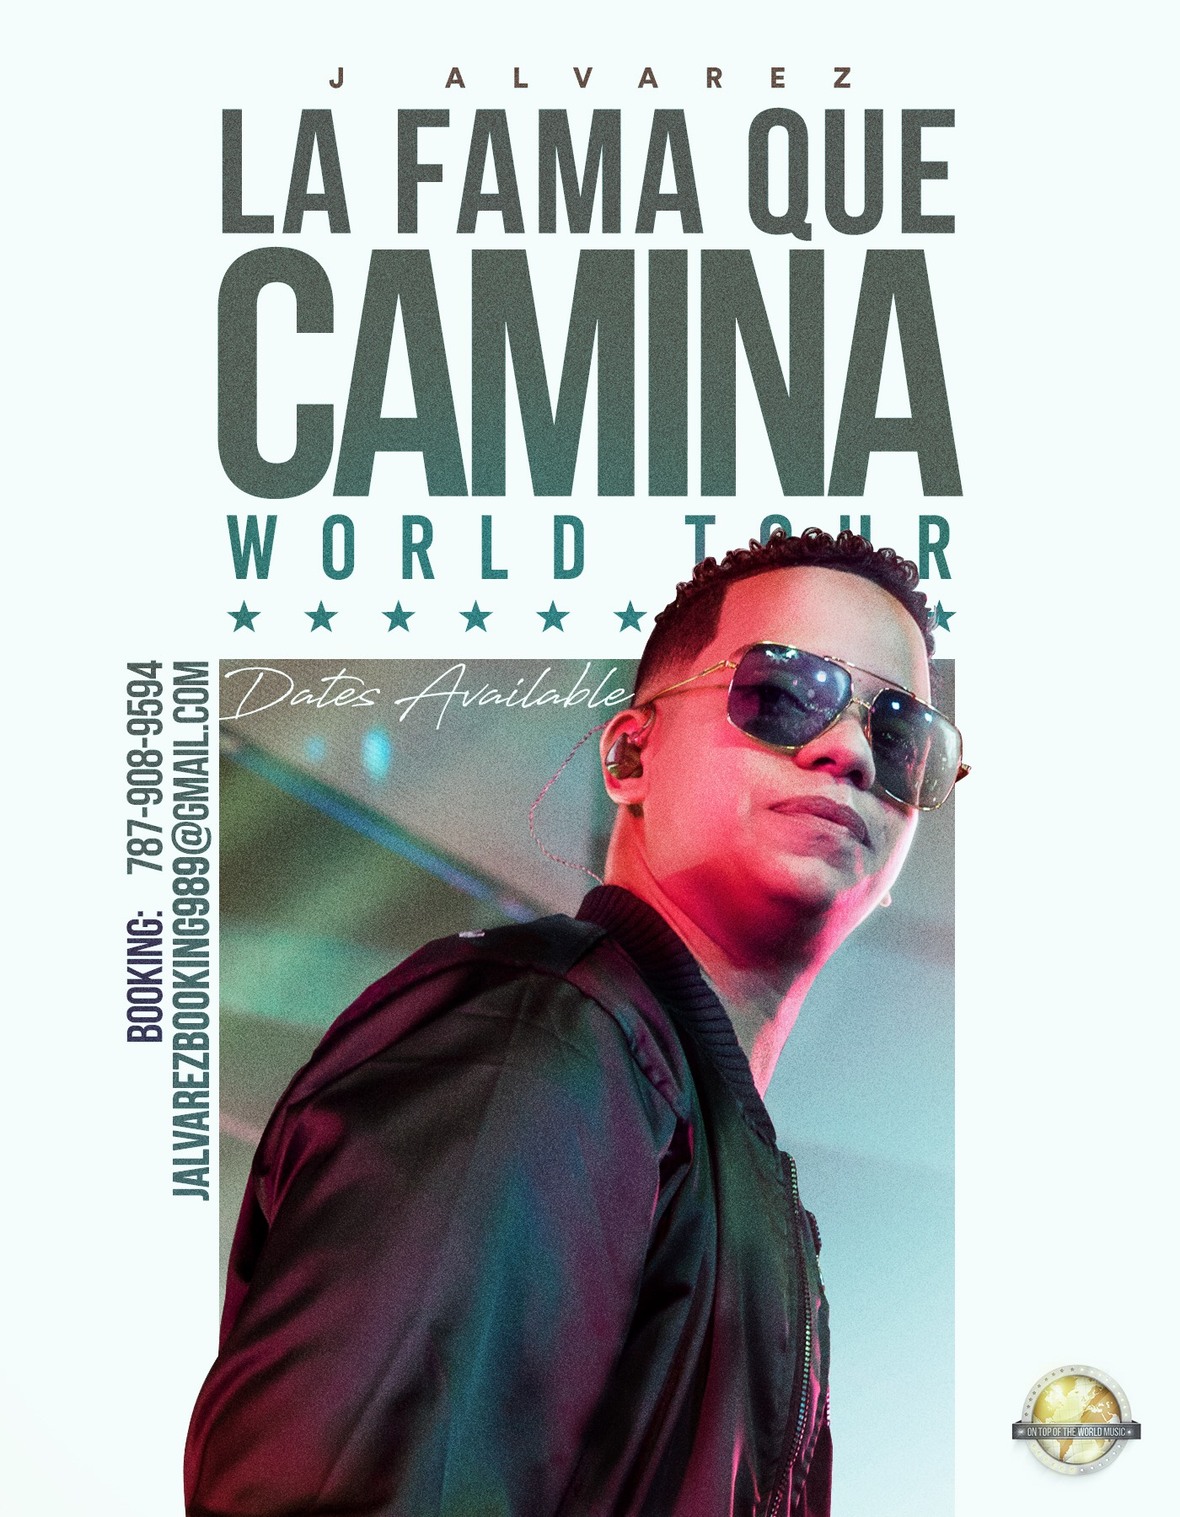 J. ALVAREZ anuncia gira mundial ‘La Fama Que Camina World Tour’